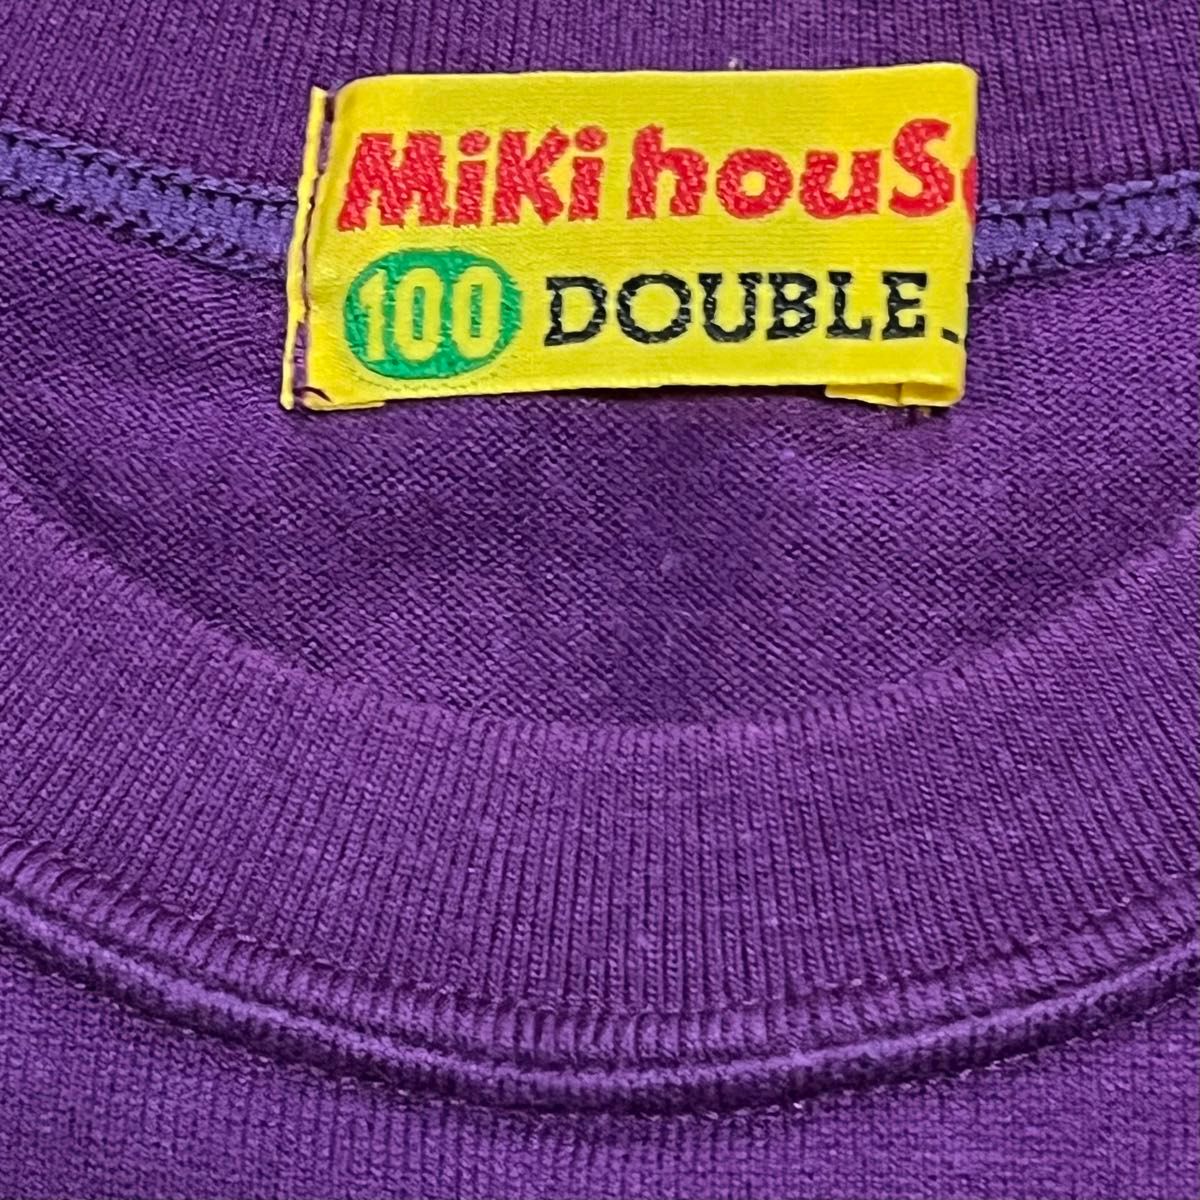 MIKI HOUSE ミキハウス ダブルビー 半袖Tシャツ プリントロゴ 100